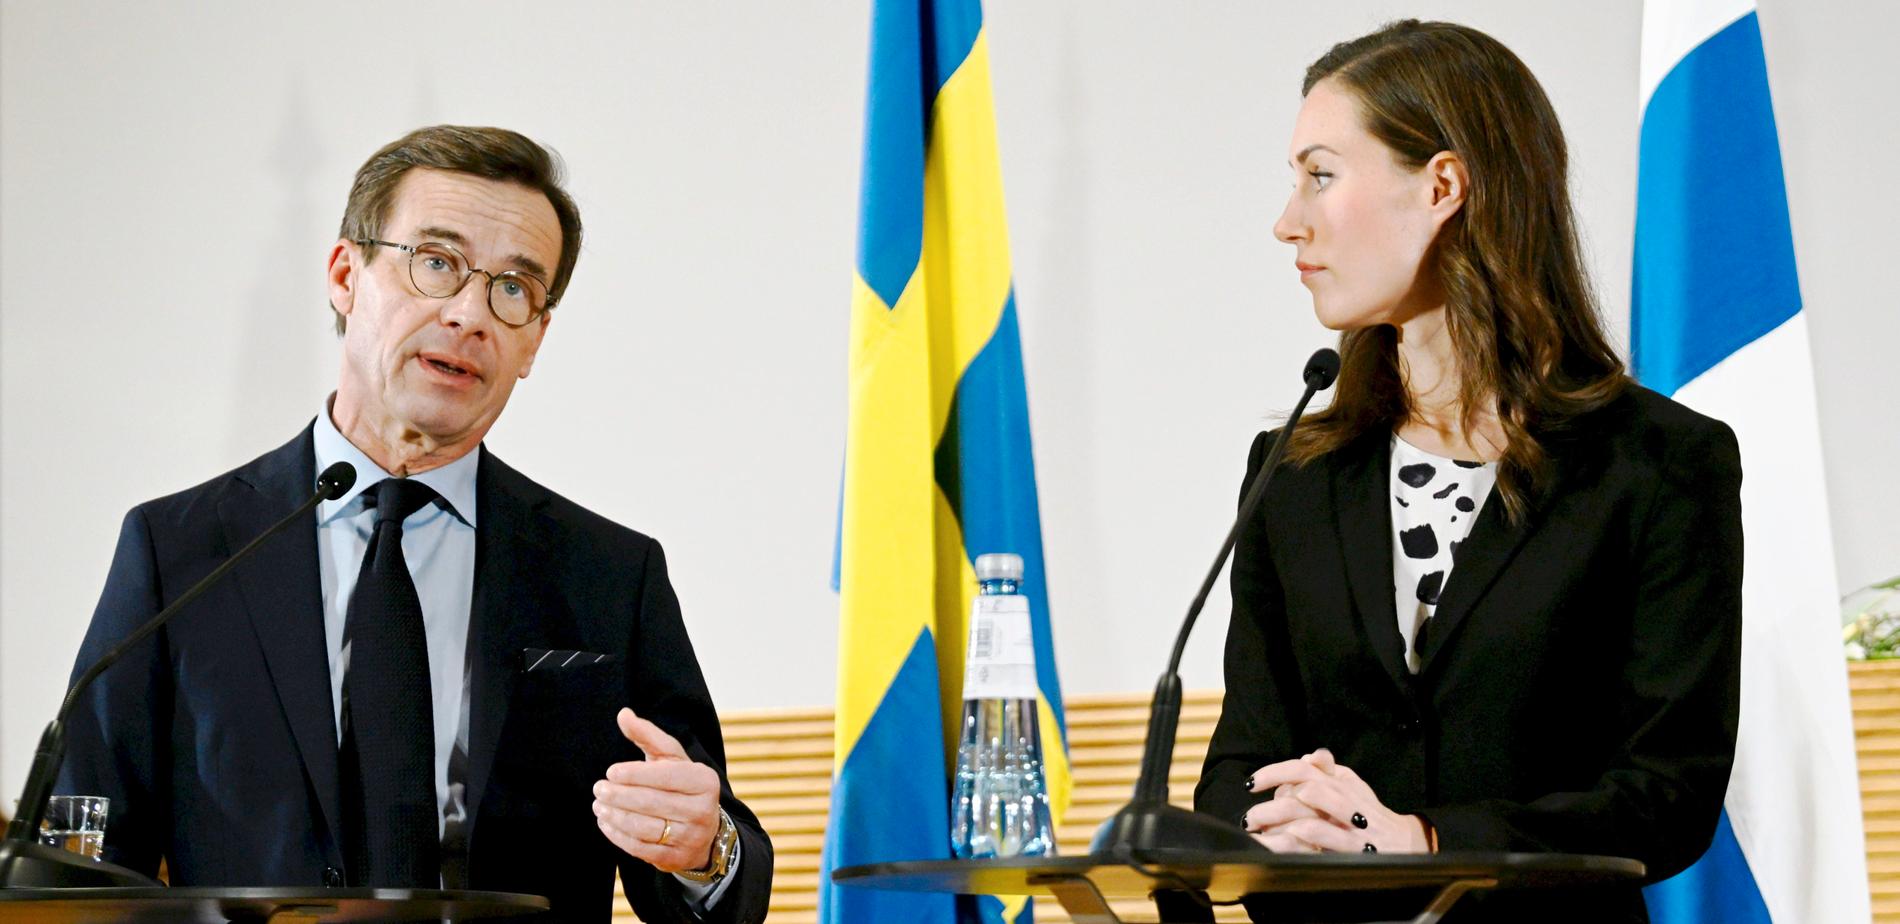 För femton år sedan var dubbla medborgarskap ingen fråga i den svenska debatten. Annat är det i dag. På bild: Ulf Kristersson och Finlands statsminister Sanna Marin.